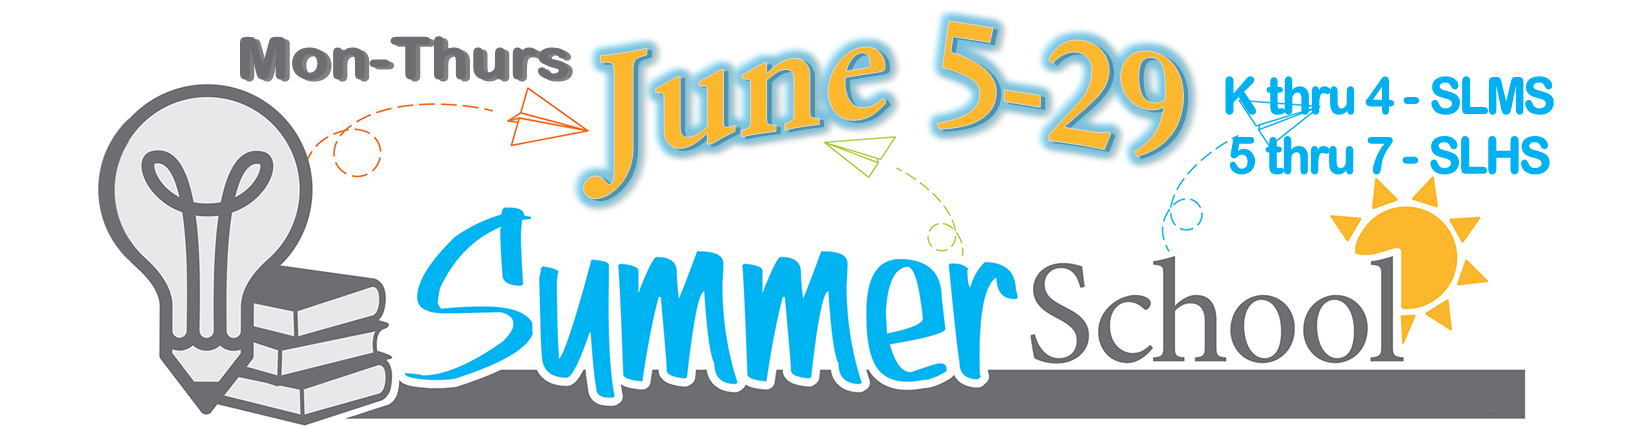 Summer school reminder. Summer school will run June 5-29